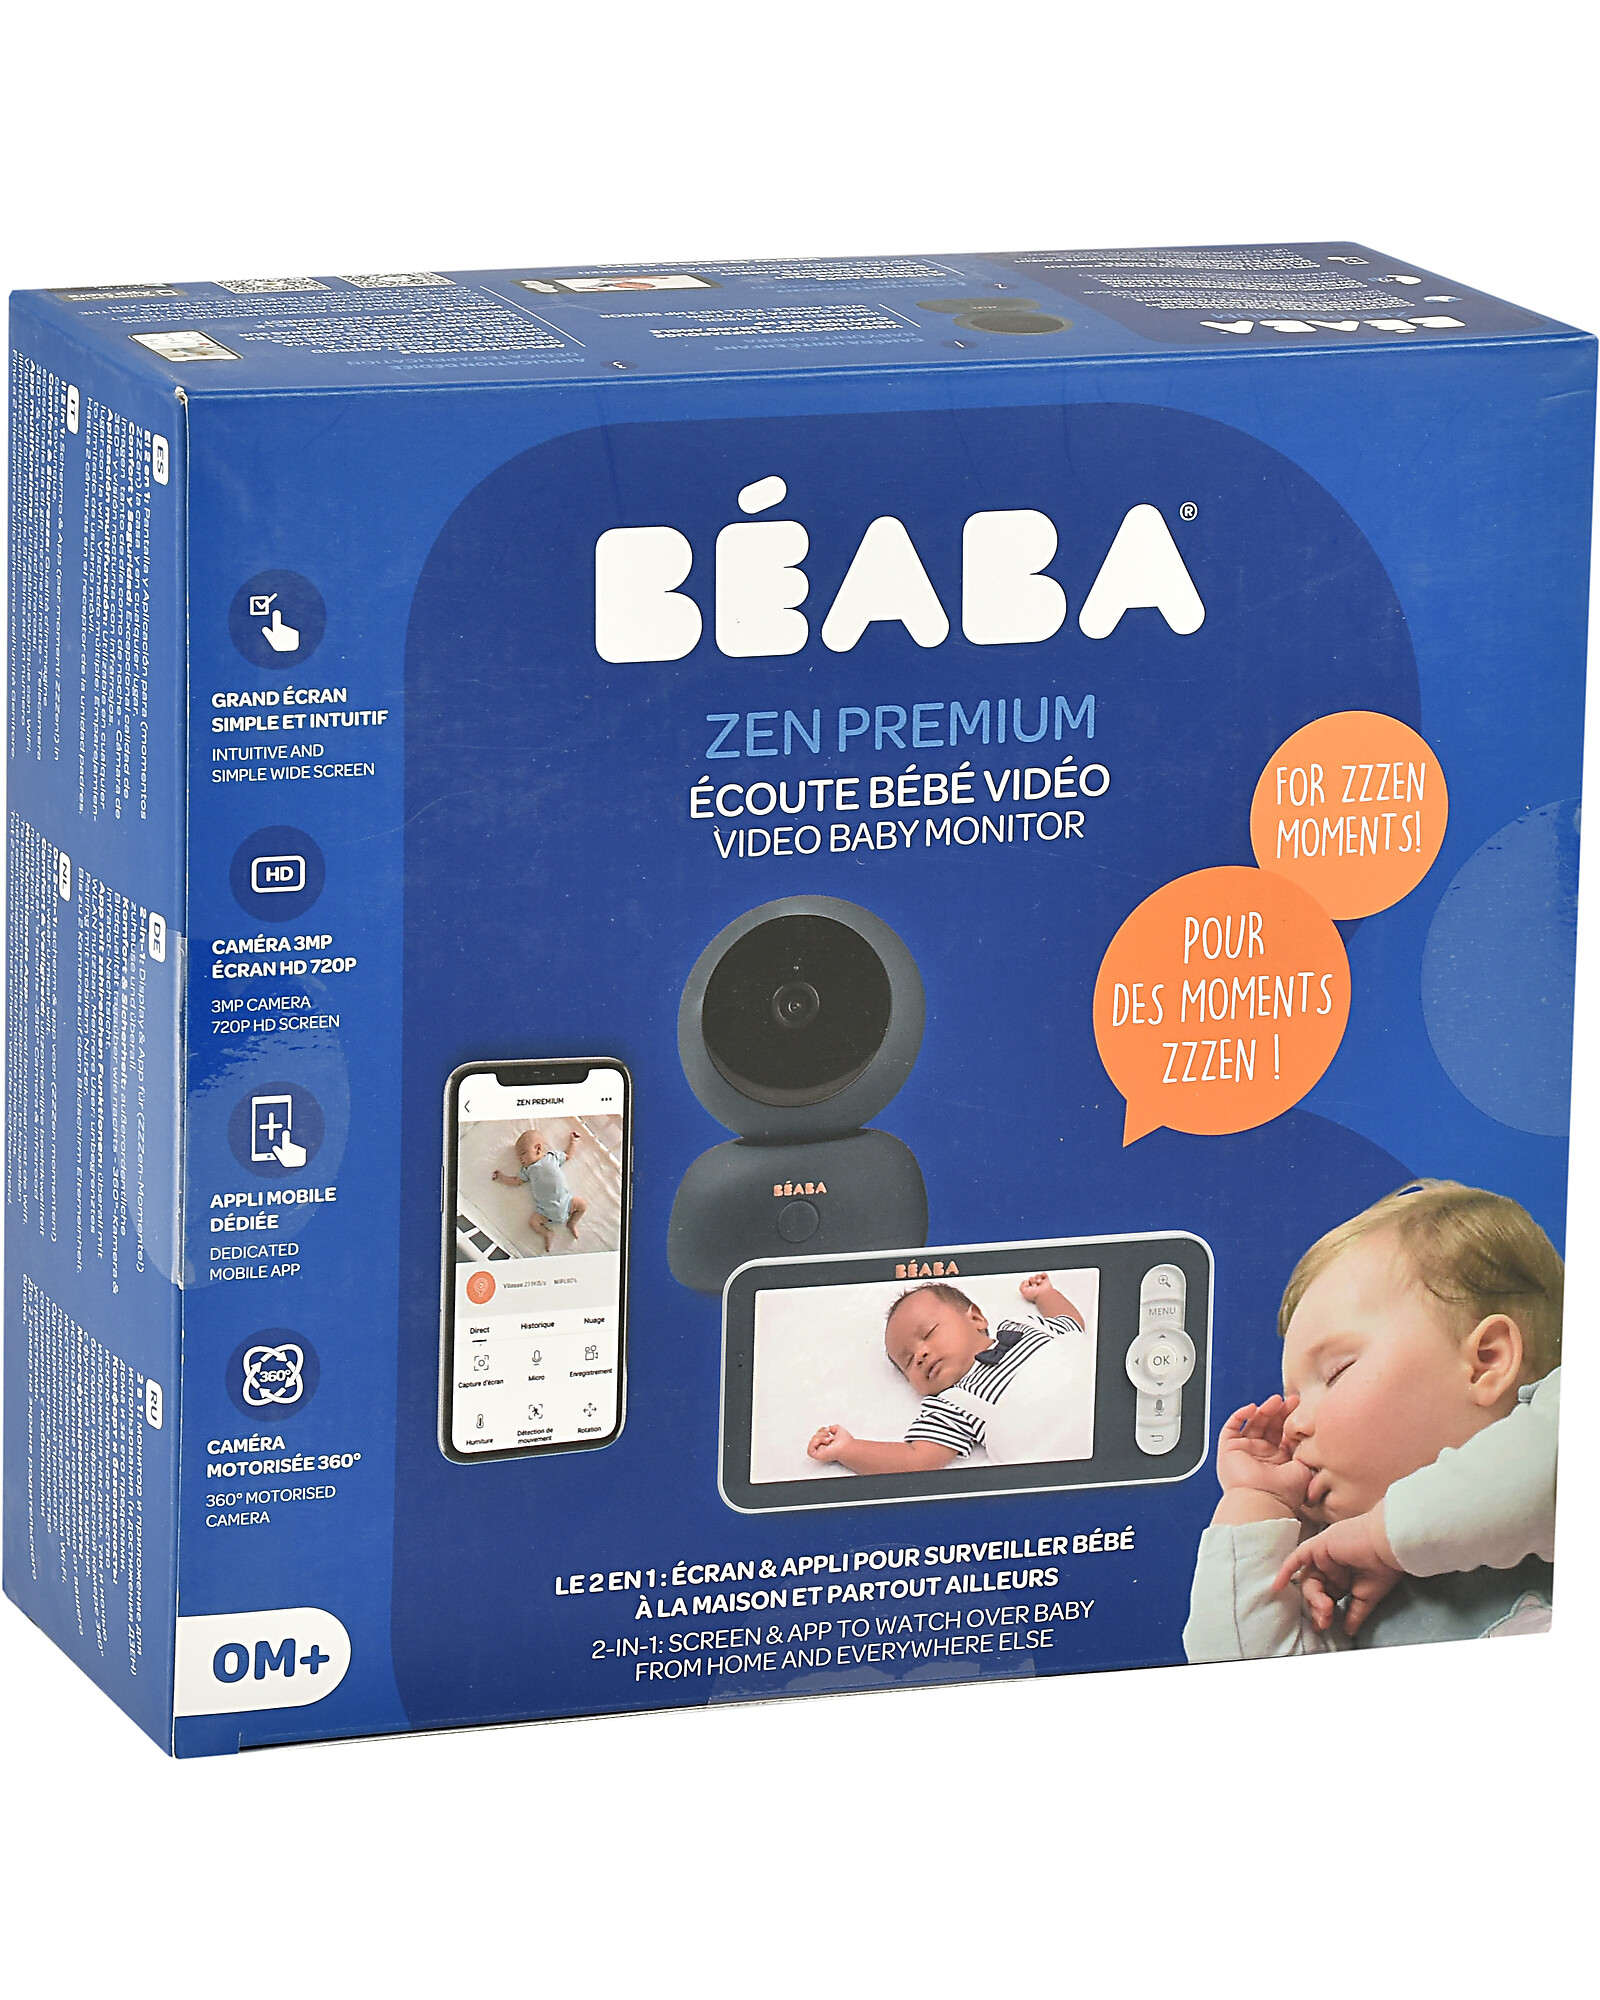 Babyphone Zen premium Béaba – Lemon8store